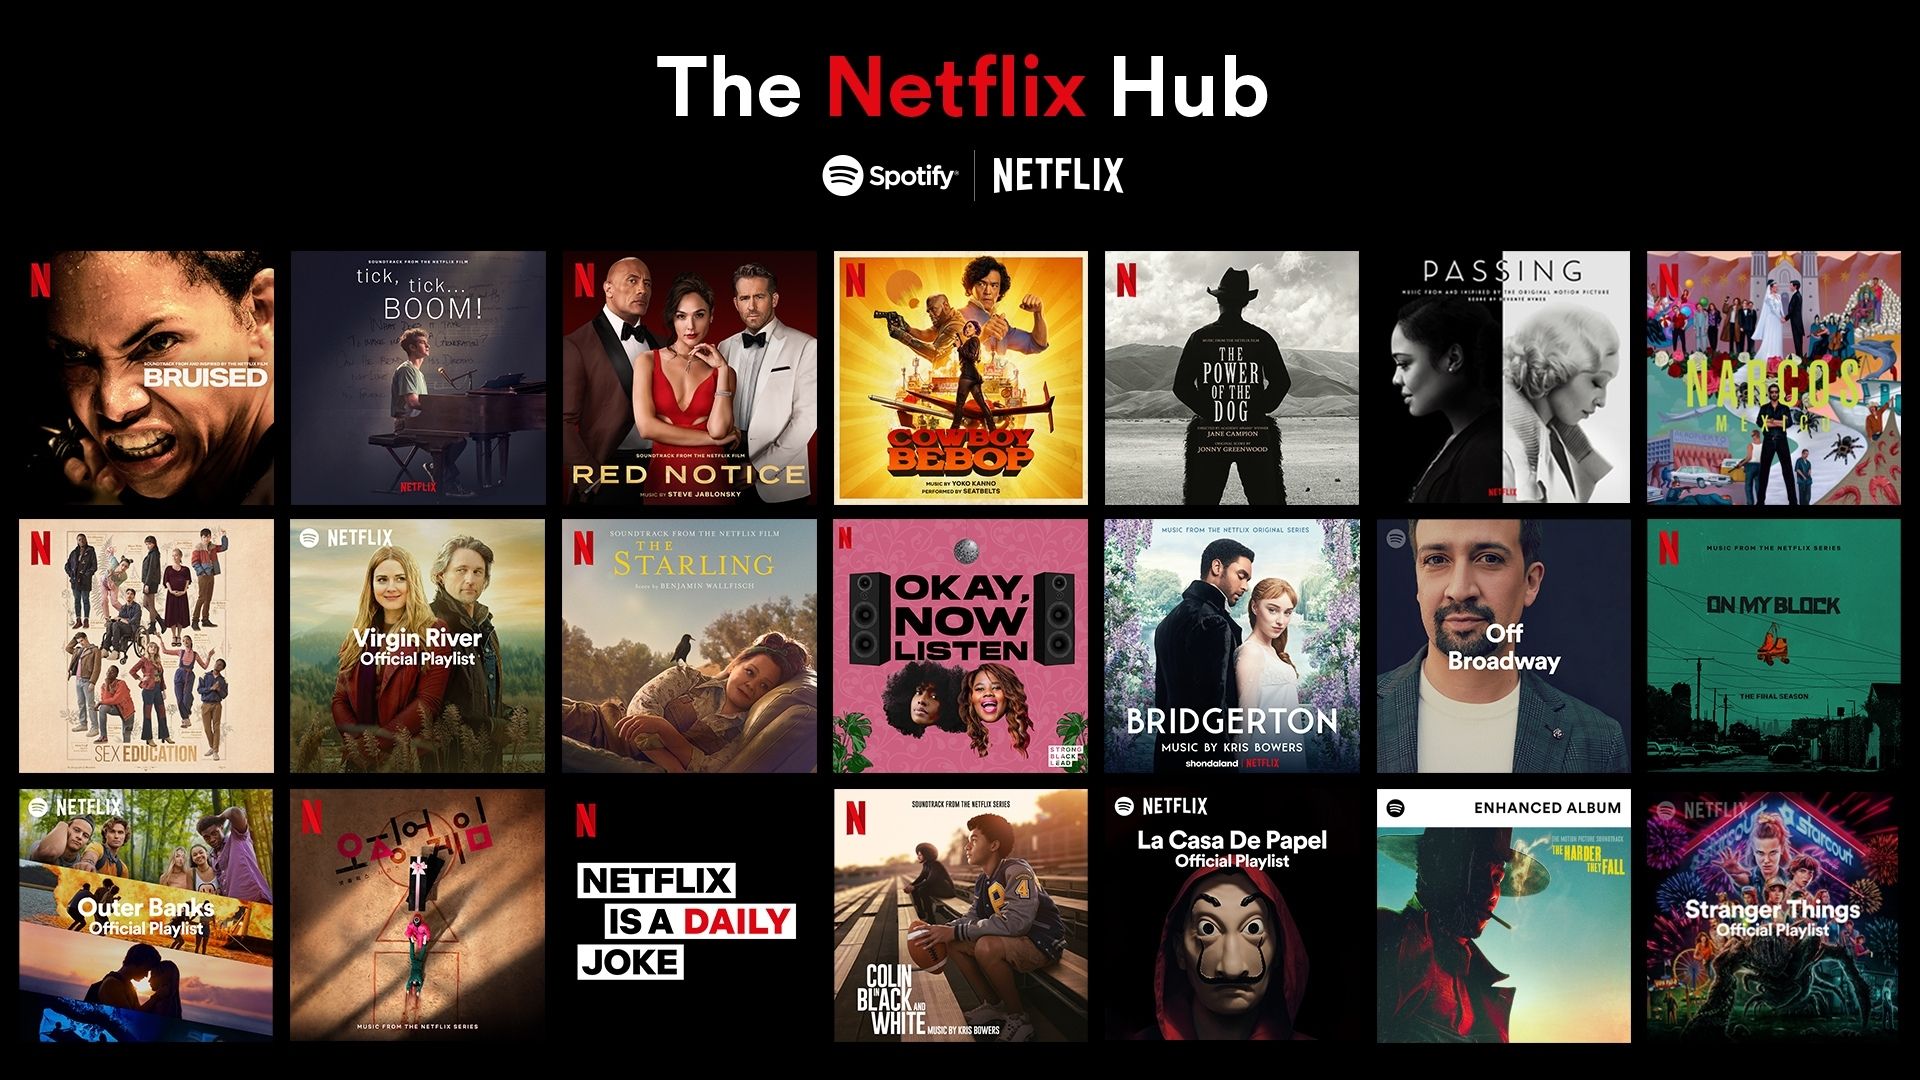 Las series y películas de Netflix más populares ya tienen espacios dedicados en Spotify